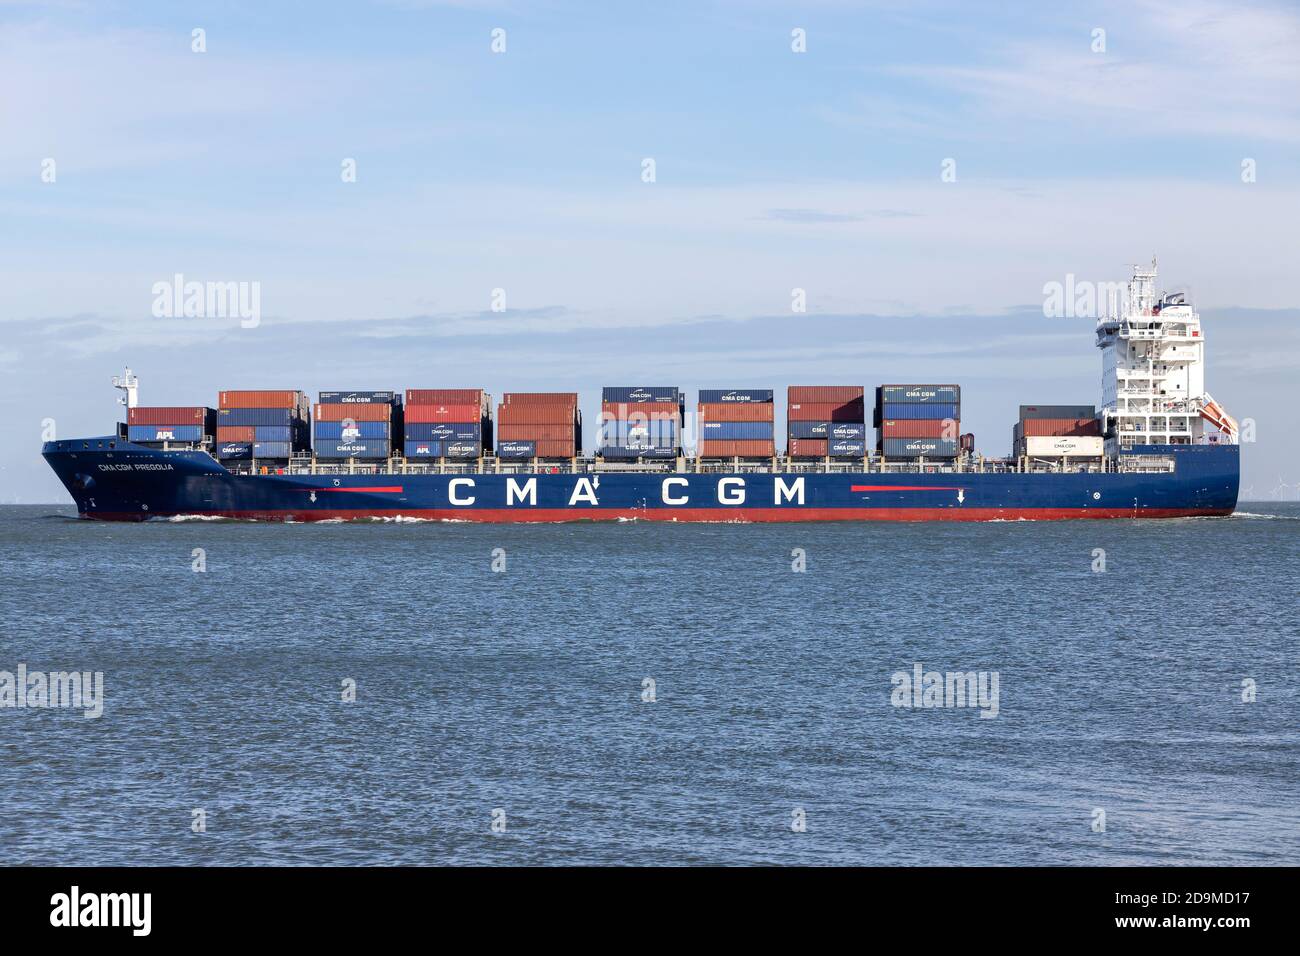 container ship CMA CGM PREGOLIA on the river Elbe Stock Photo